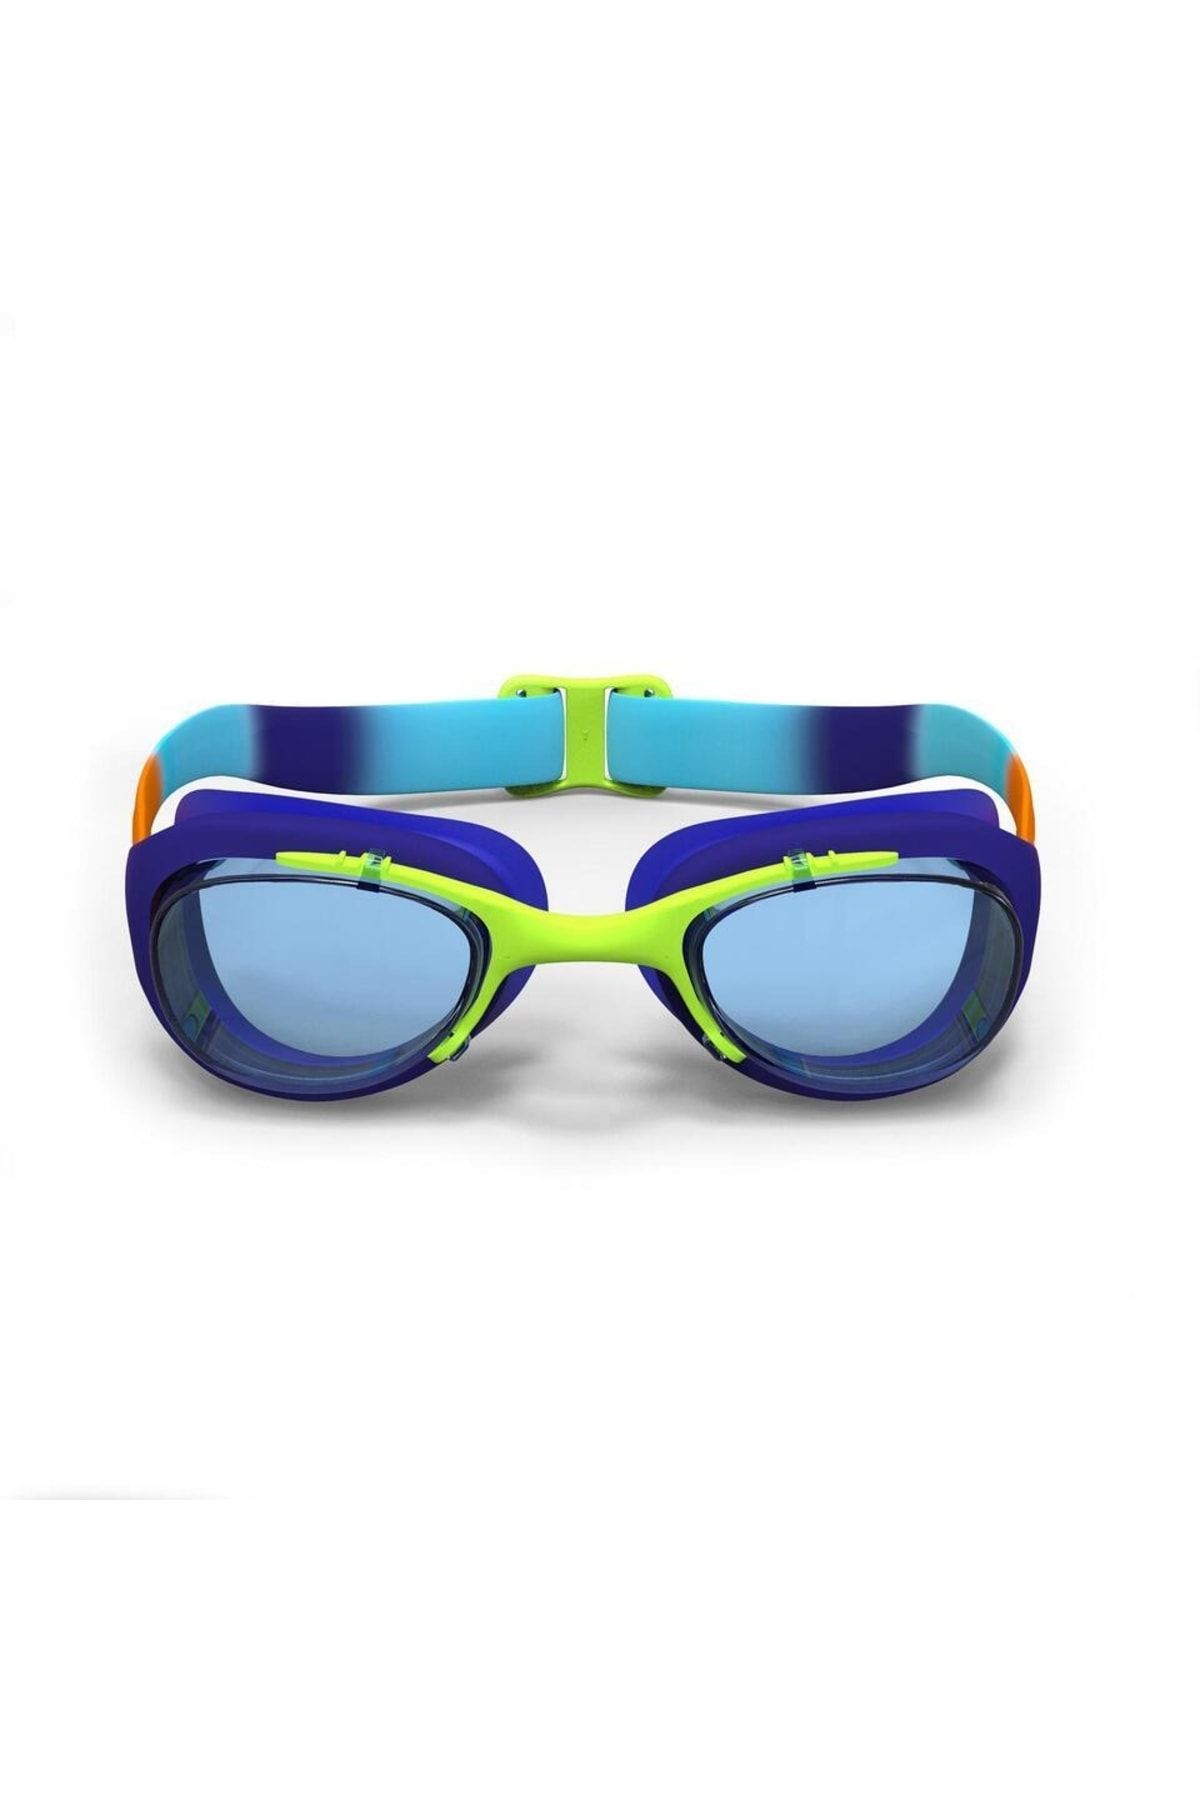 Decathlon - Çocuk Yüzücü Gözlüğü S Boy Şeffaf Camlar Mavi 100 Xbase